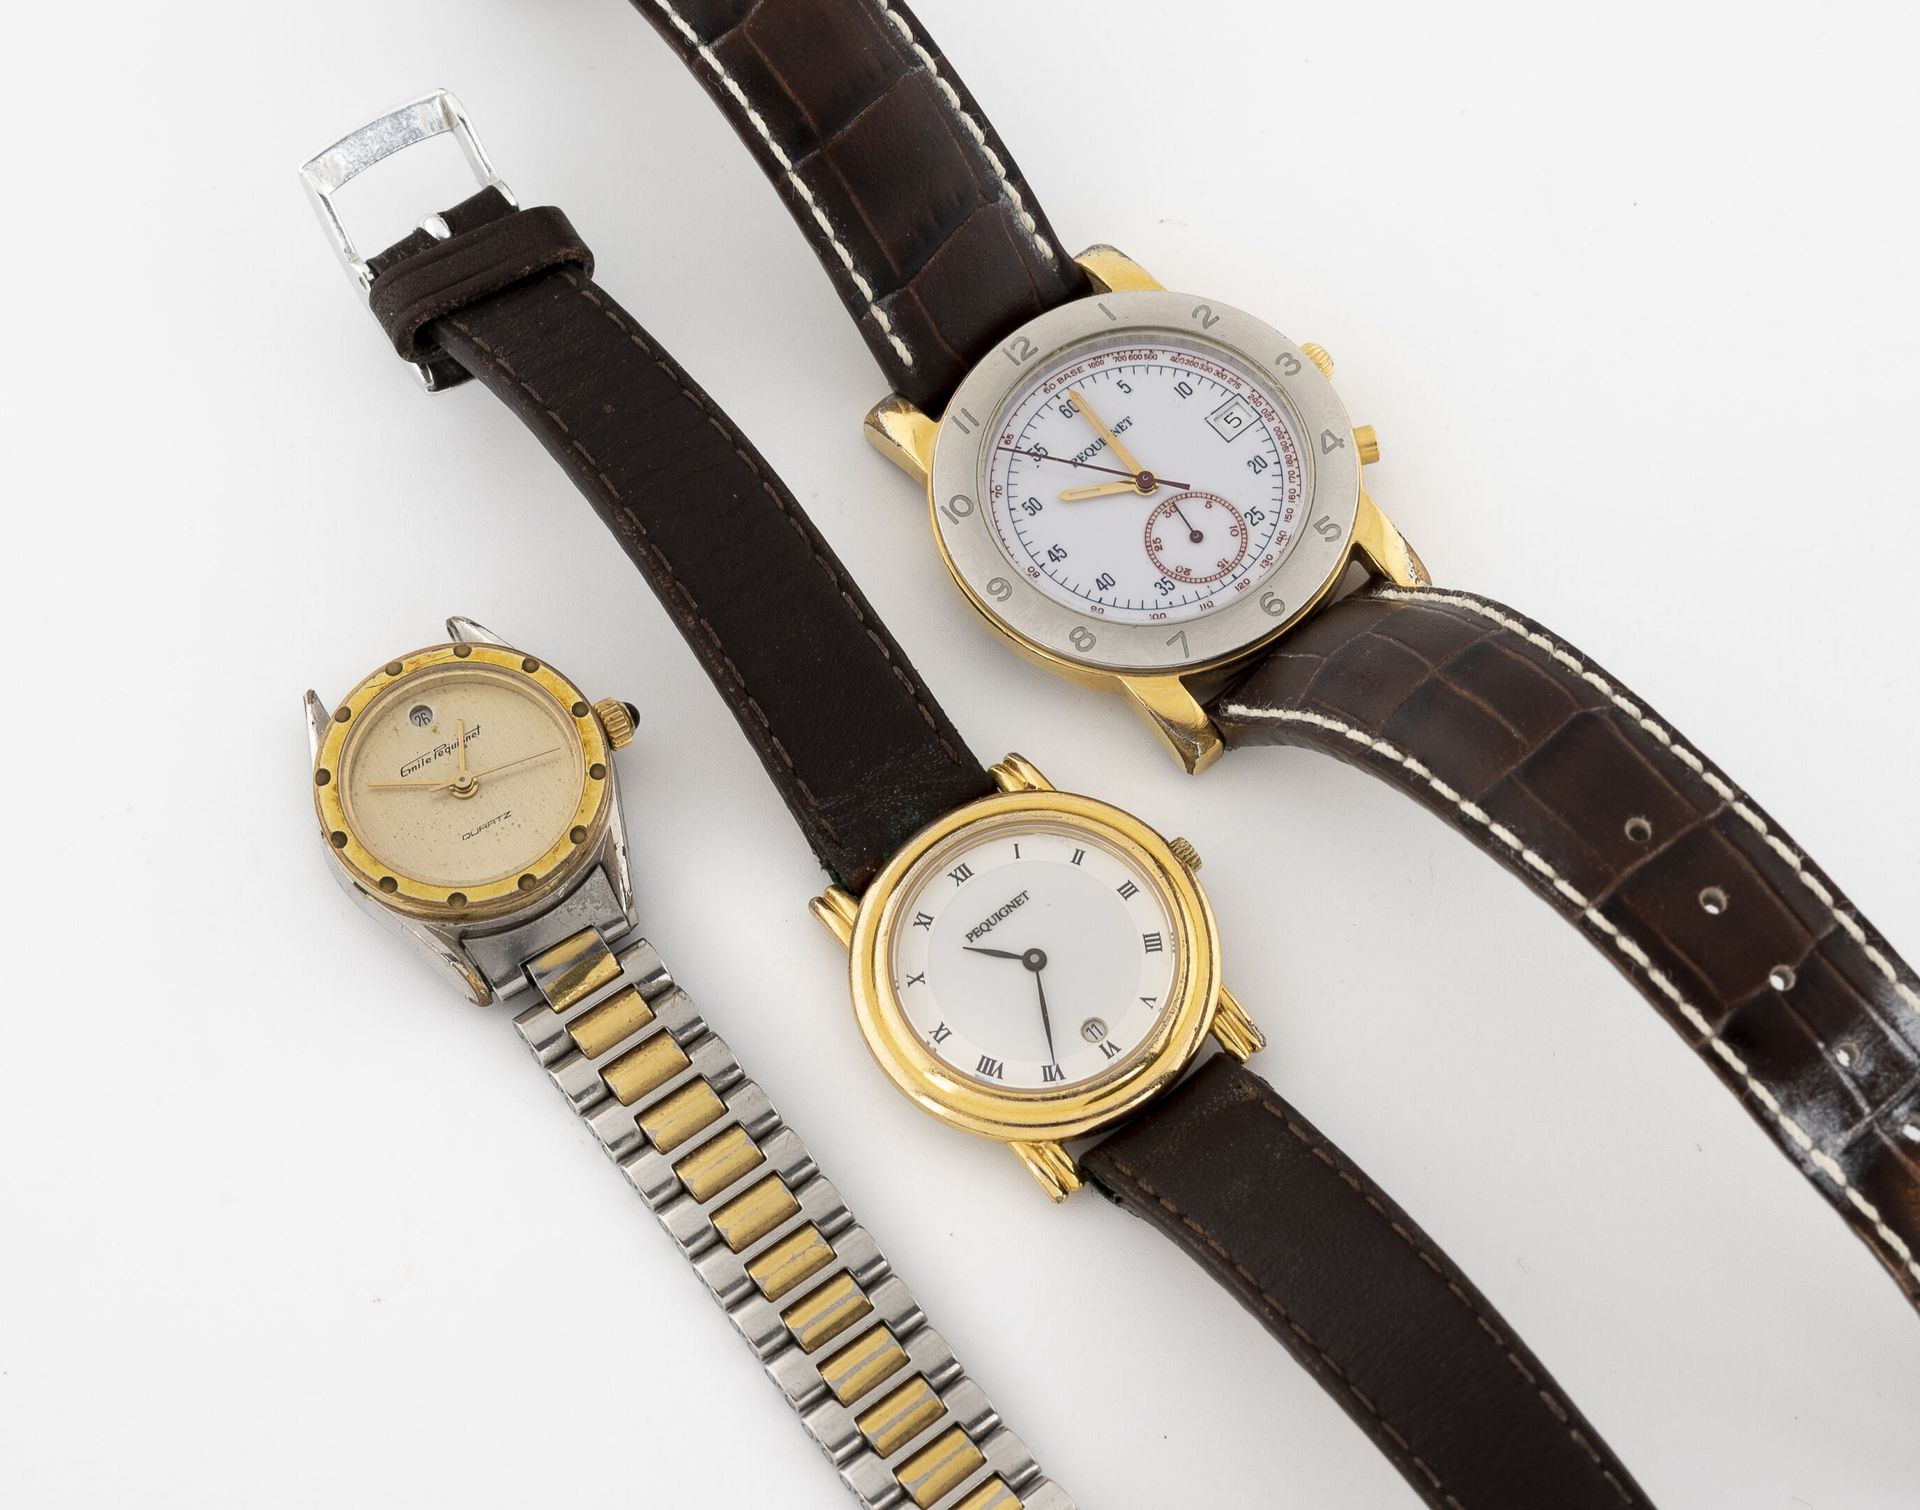 EMILE PEQUIGNET 一套三只腕表。

白色或金色珐琅表盘，有签名。

石英机芯。

钢带或皮带。

一条手链损坏，需要重新接上，使用时有划痕。